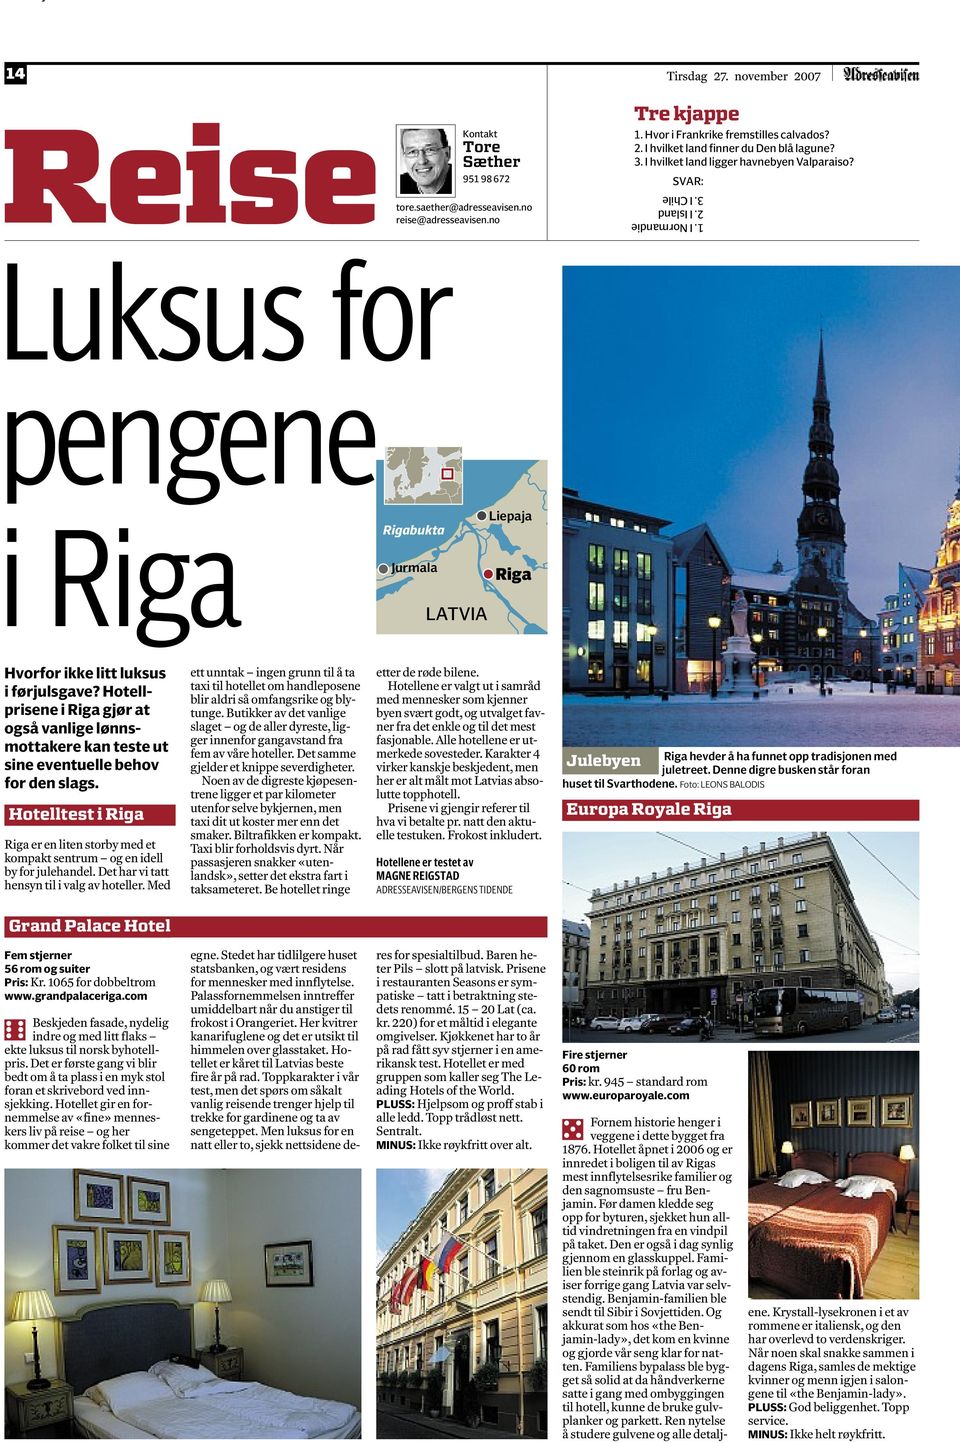 Hotellprisene i Riga gjør at også vanlige lønnsmottakere kan teste ut sine eventuelle behov for den slags.